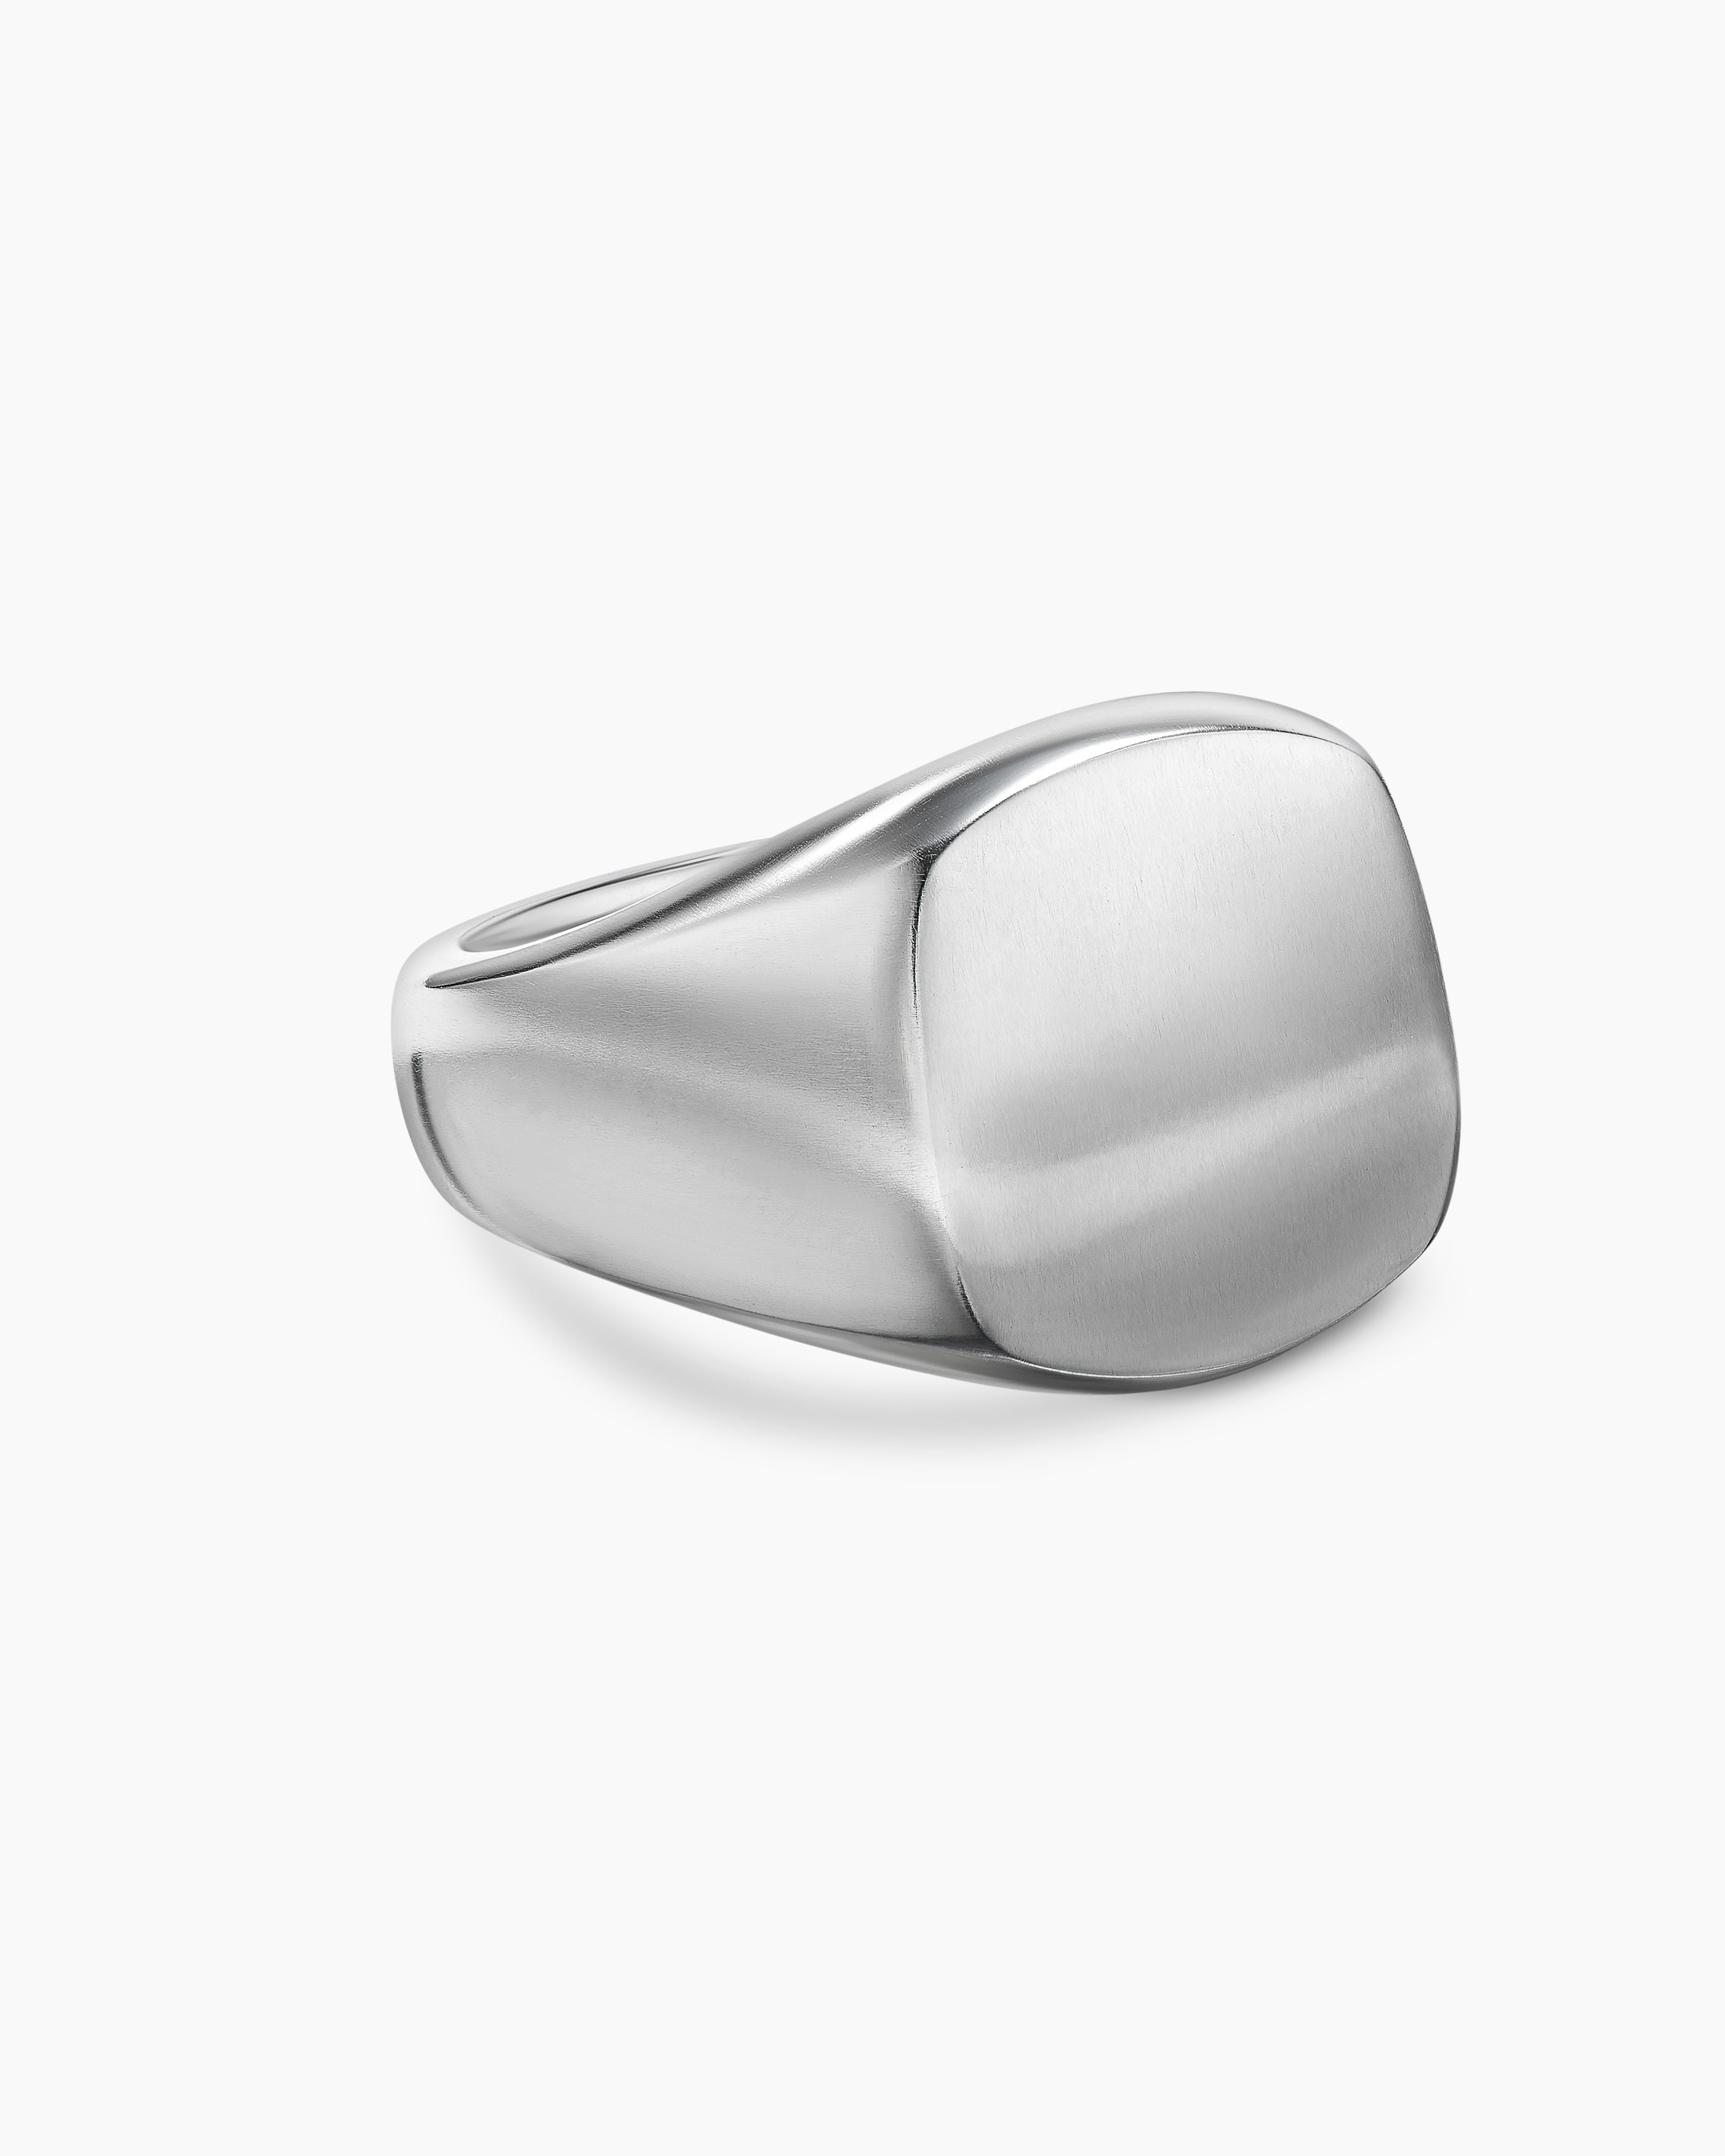 Thrillz Silver Ring For Men Stainless Steel Owl Face Evil Eye Snake Designs Silver  Rings For